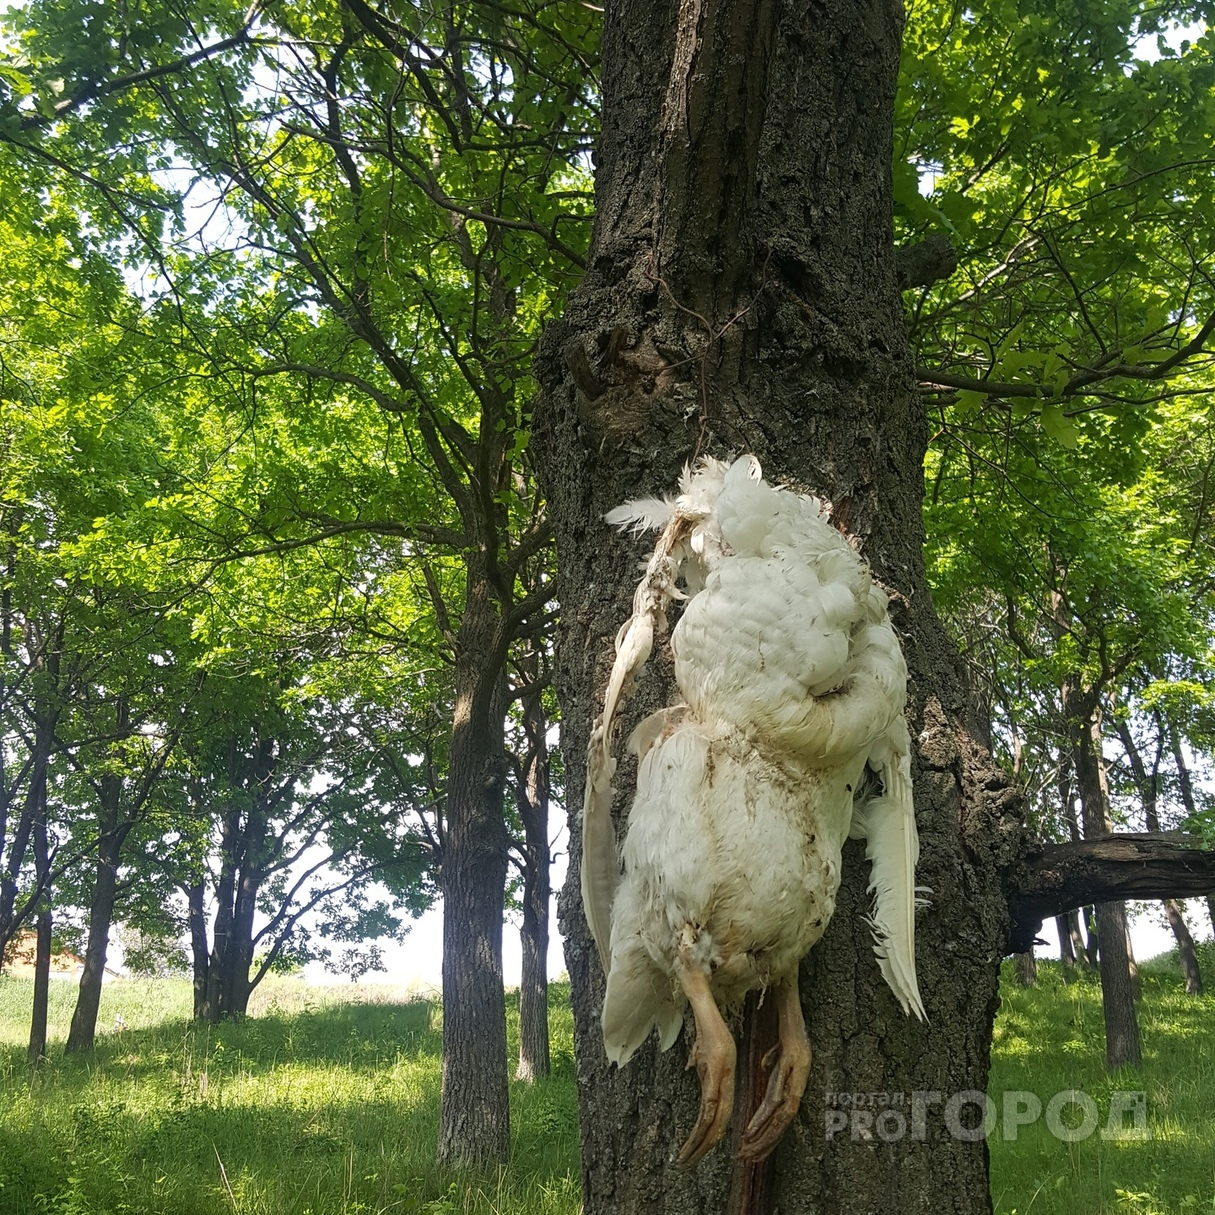 В Чебоксарском районе кто-то привязал безголовый труп гуся к дереву